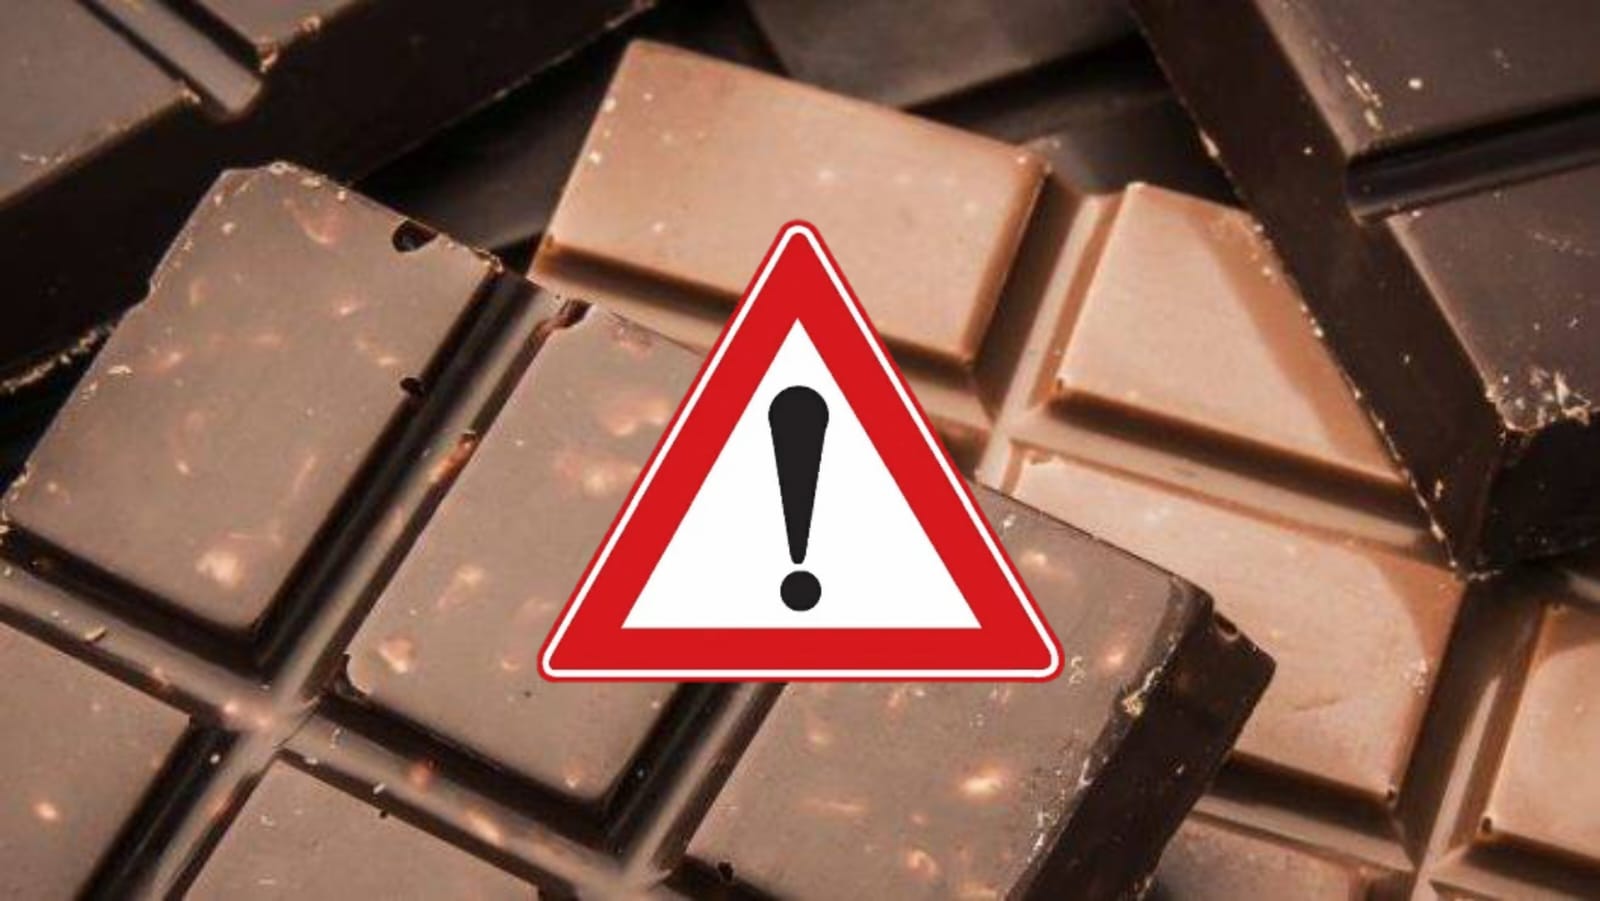 Alerta! Estudo acha metais pesados e tóxicos em chocolates de marcas famosas; Muito cuidado!